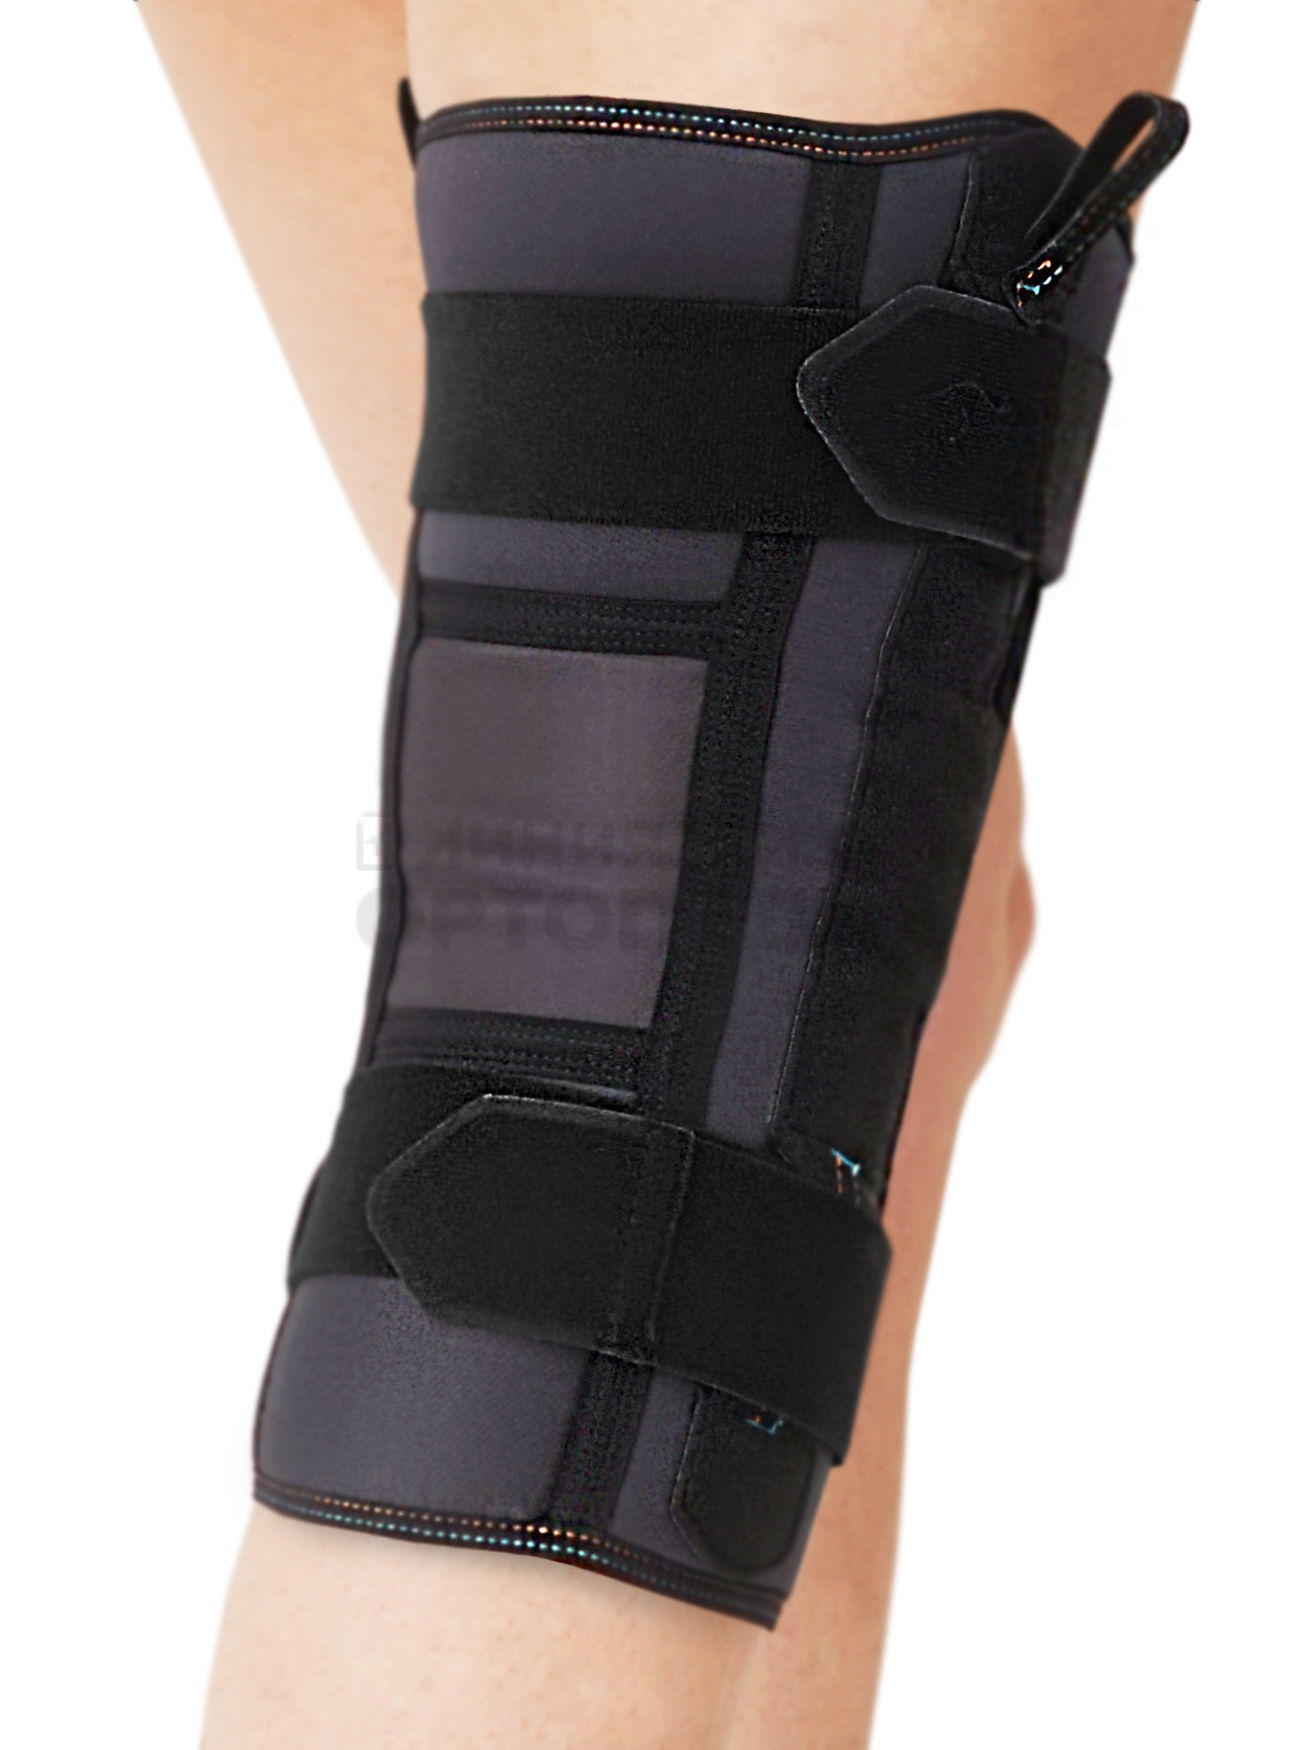 Ортез на коленный сустав разъемный с полицентрическими шарнирами, М, КС-617 — ТВК Орто ник